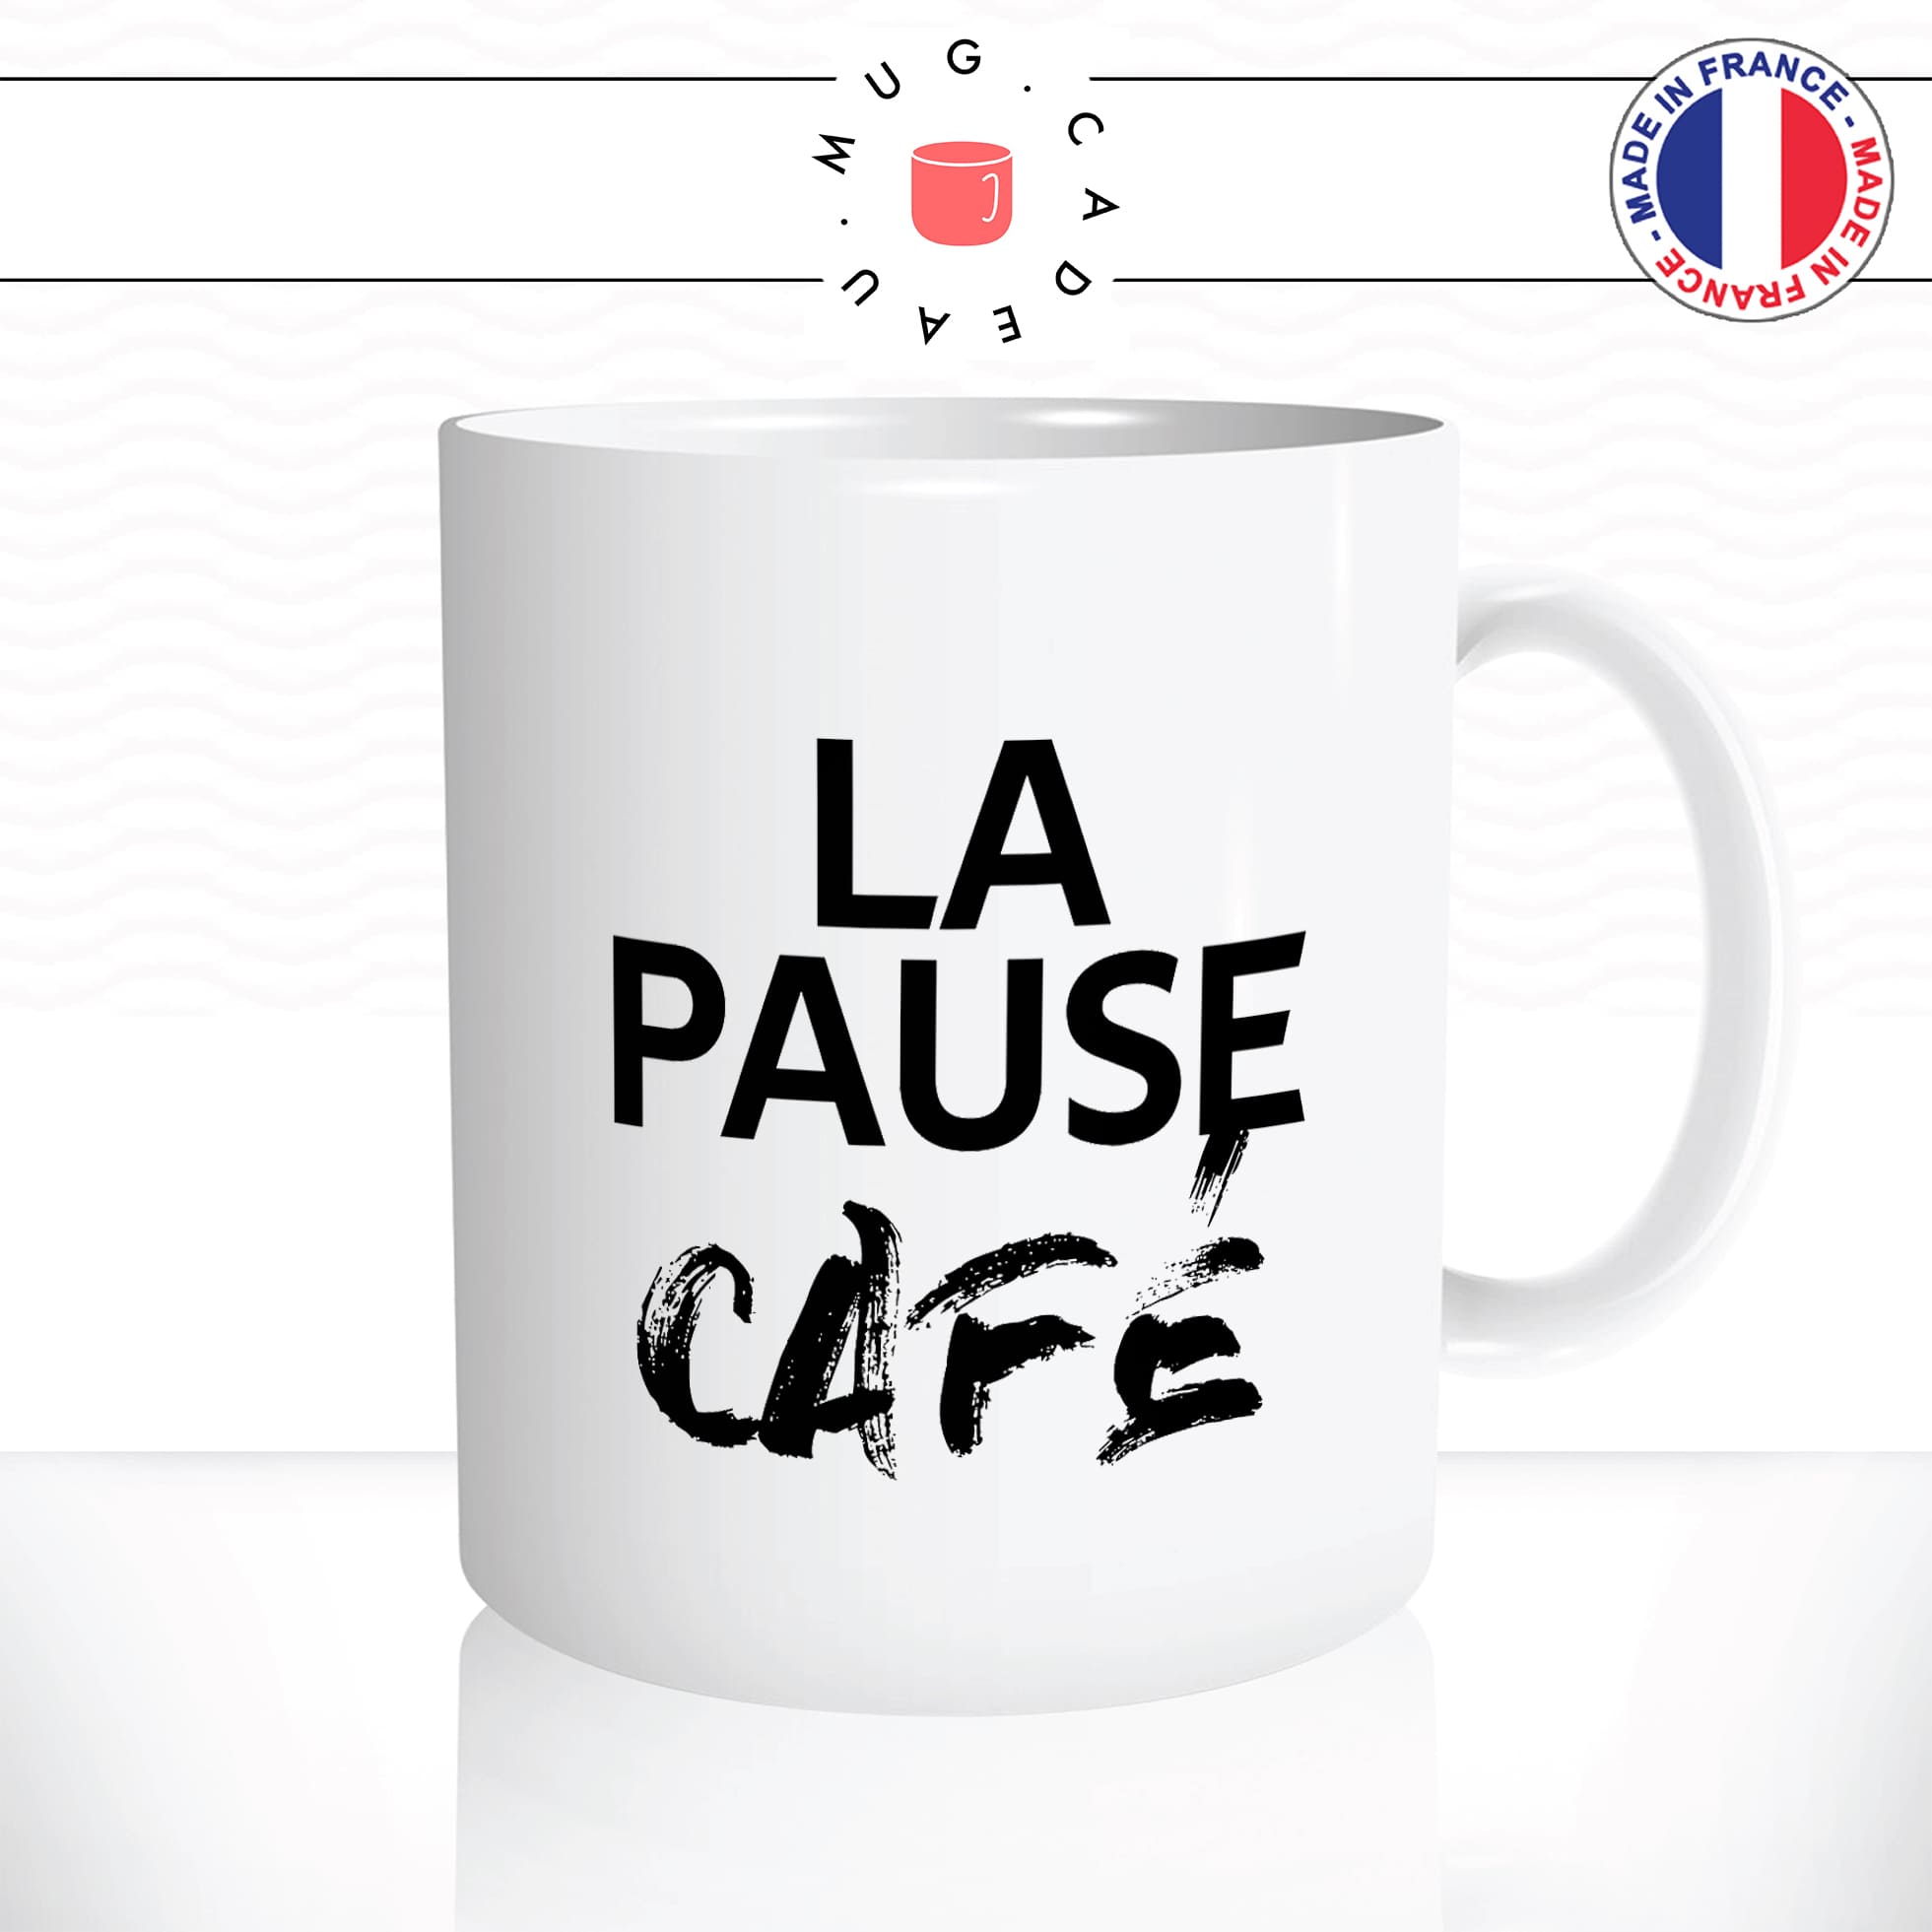 mug-tasse-blanc-la-pause-café-thé-collegue-travail-boulot-homme-femme-accro-humour-fun-idée-cadeau-originale-cool2